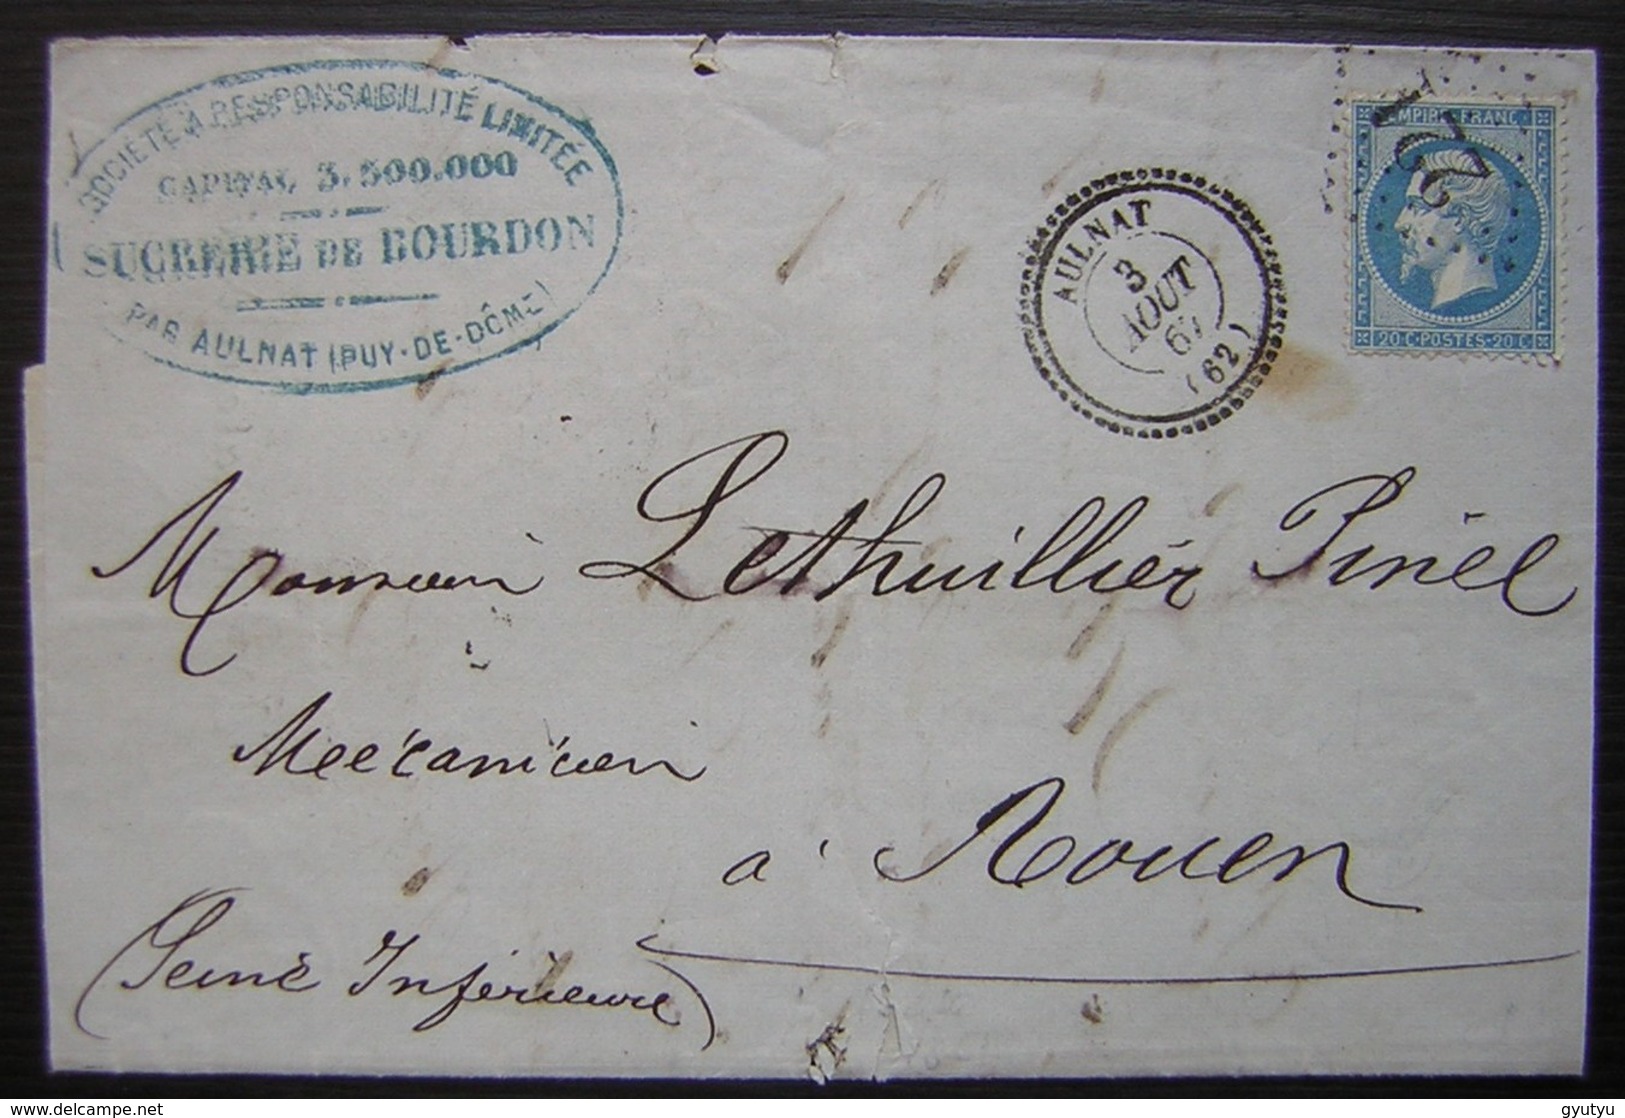 Aulnat 1867 Sucrerie De Bourdon (Puy De Dôme) Gc 221  Joli Cachet Bien Frappé - 1849-1876: Période Classique